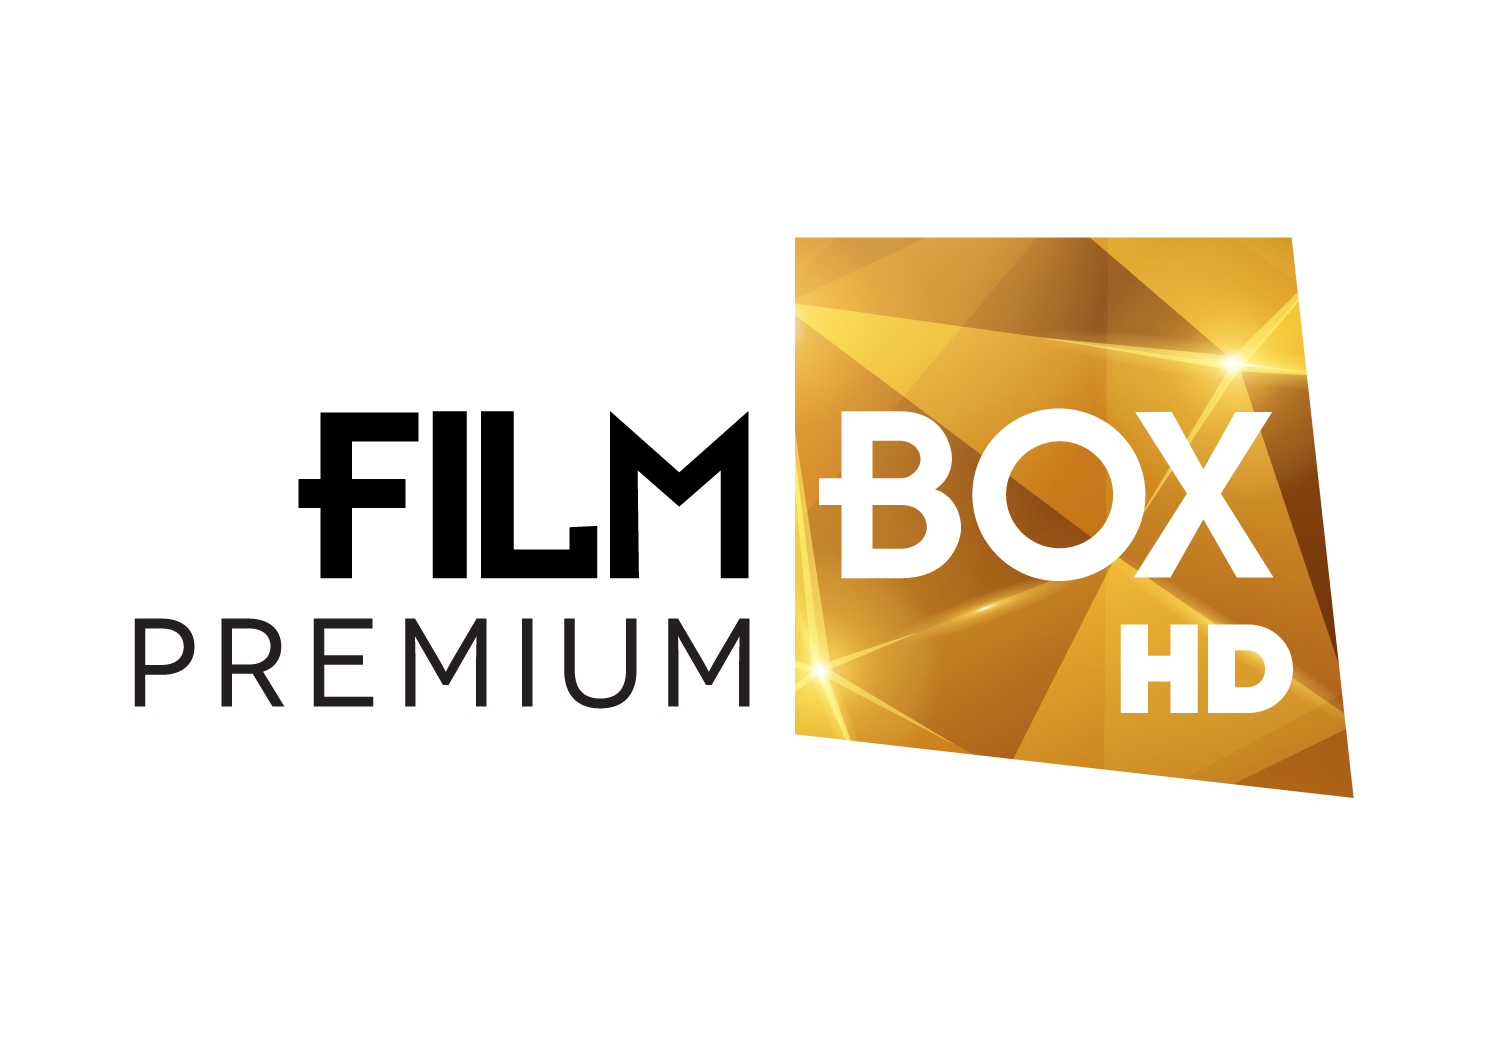  FilmBox Premium HD